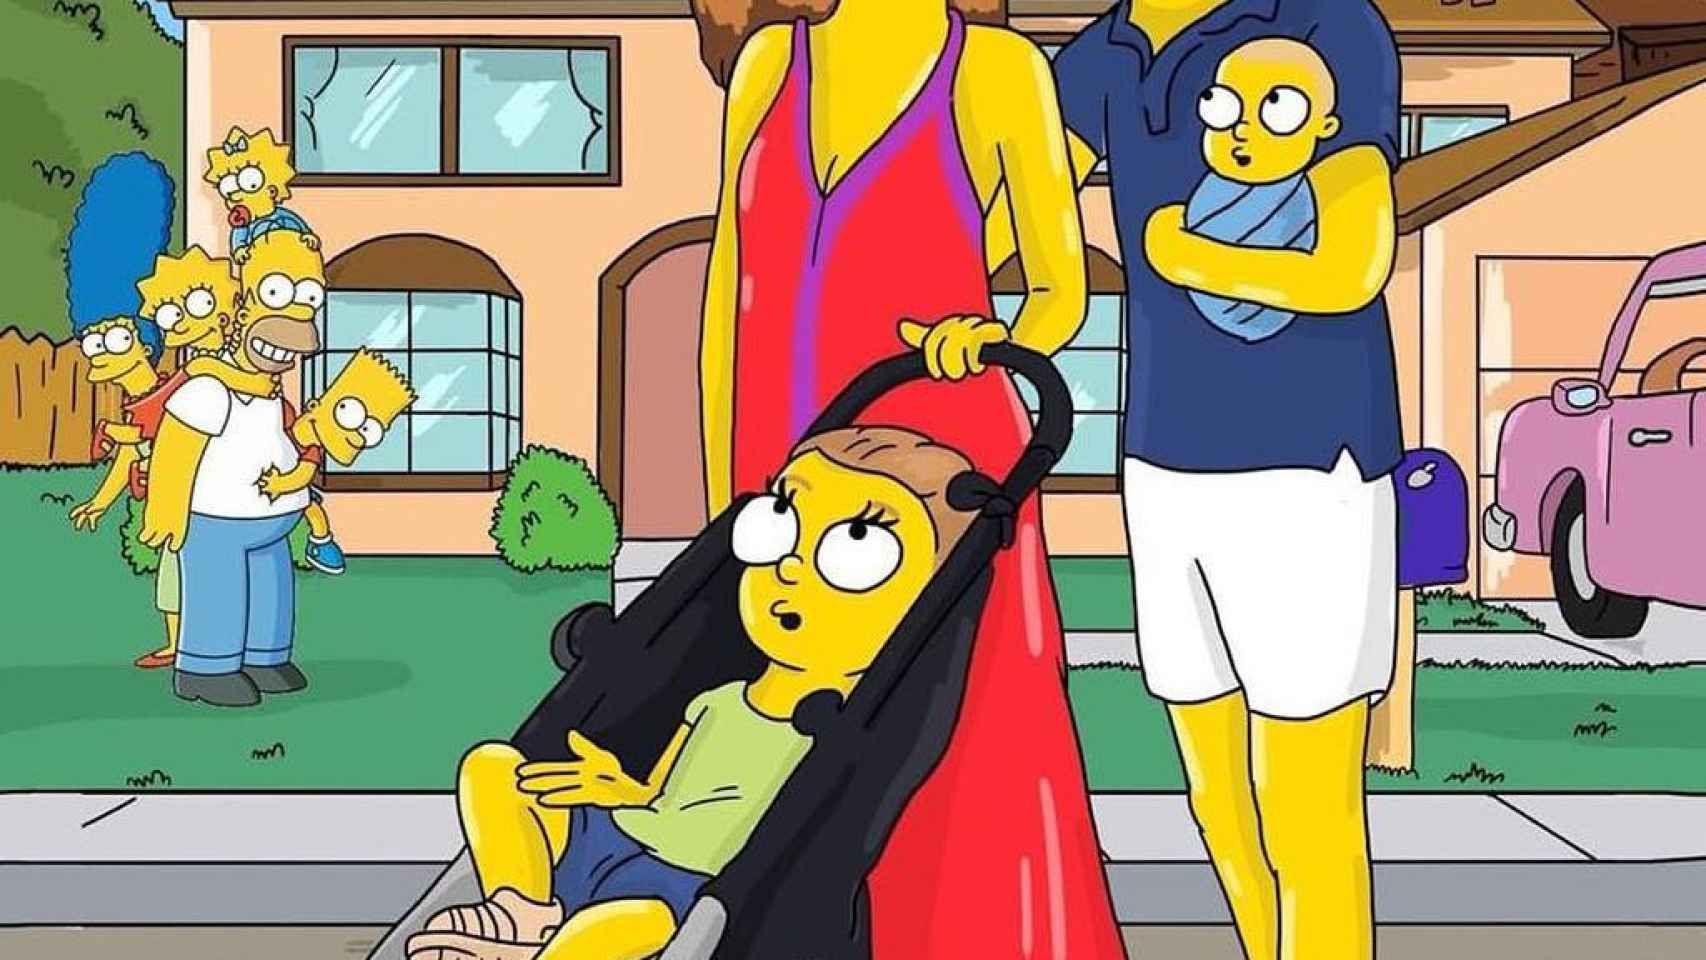 Xavi Hernández y su familia convertido en personajes de 'Los Simpson' / INSTAGRAM